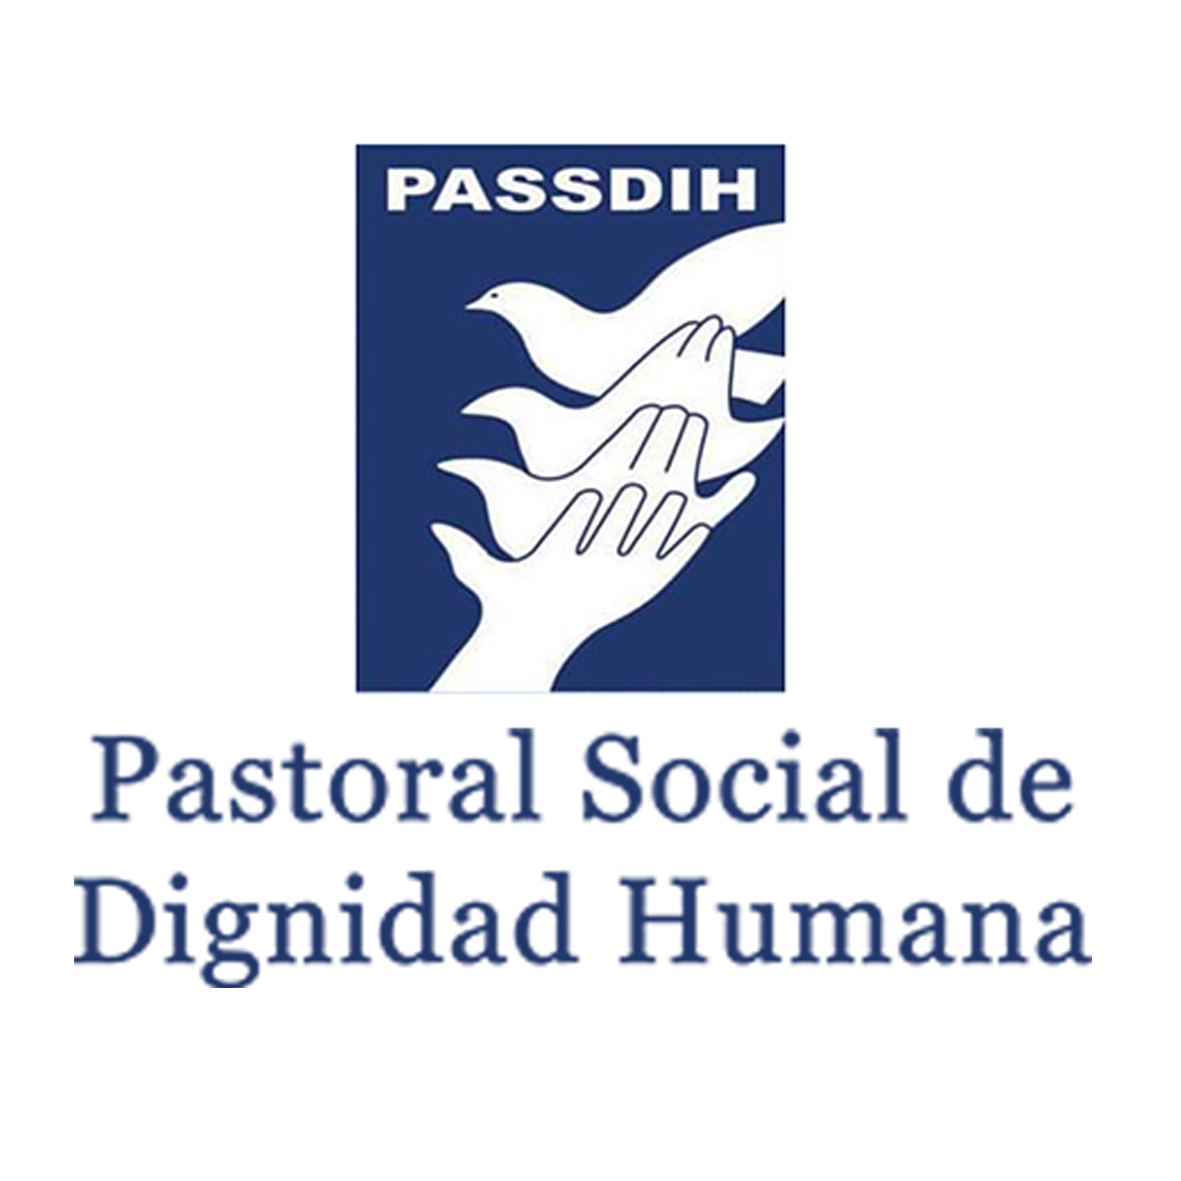 PASTORAL SOCIAL DE DIGNIDAD HUMANA